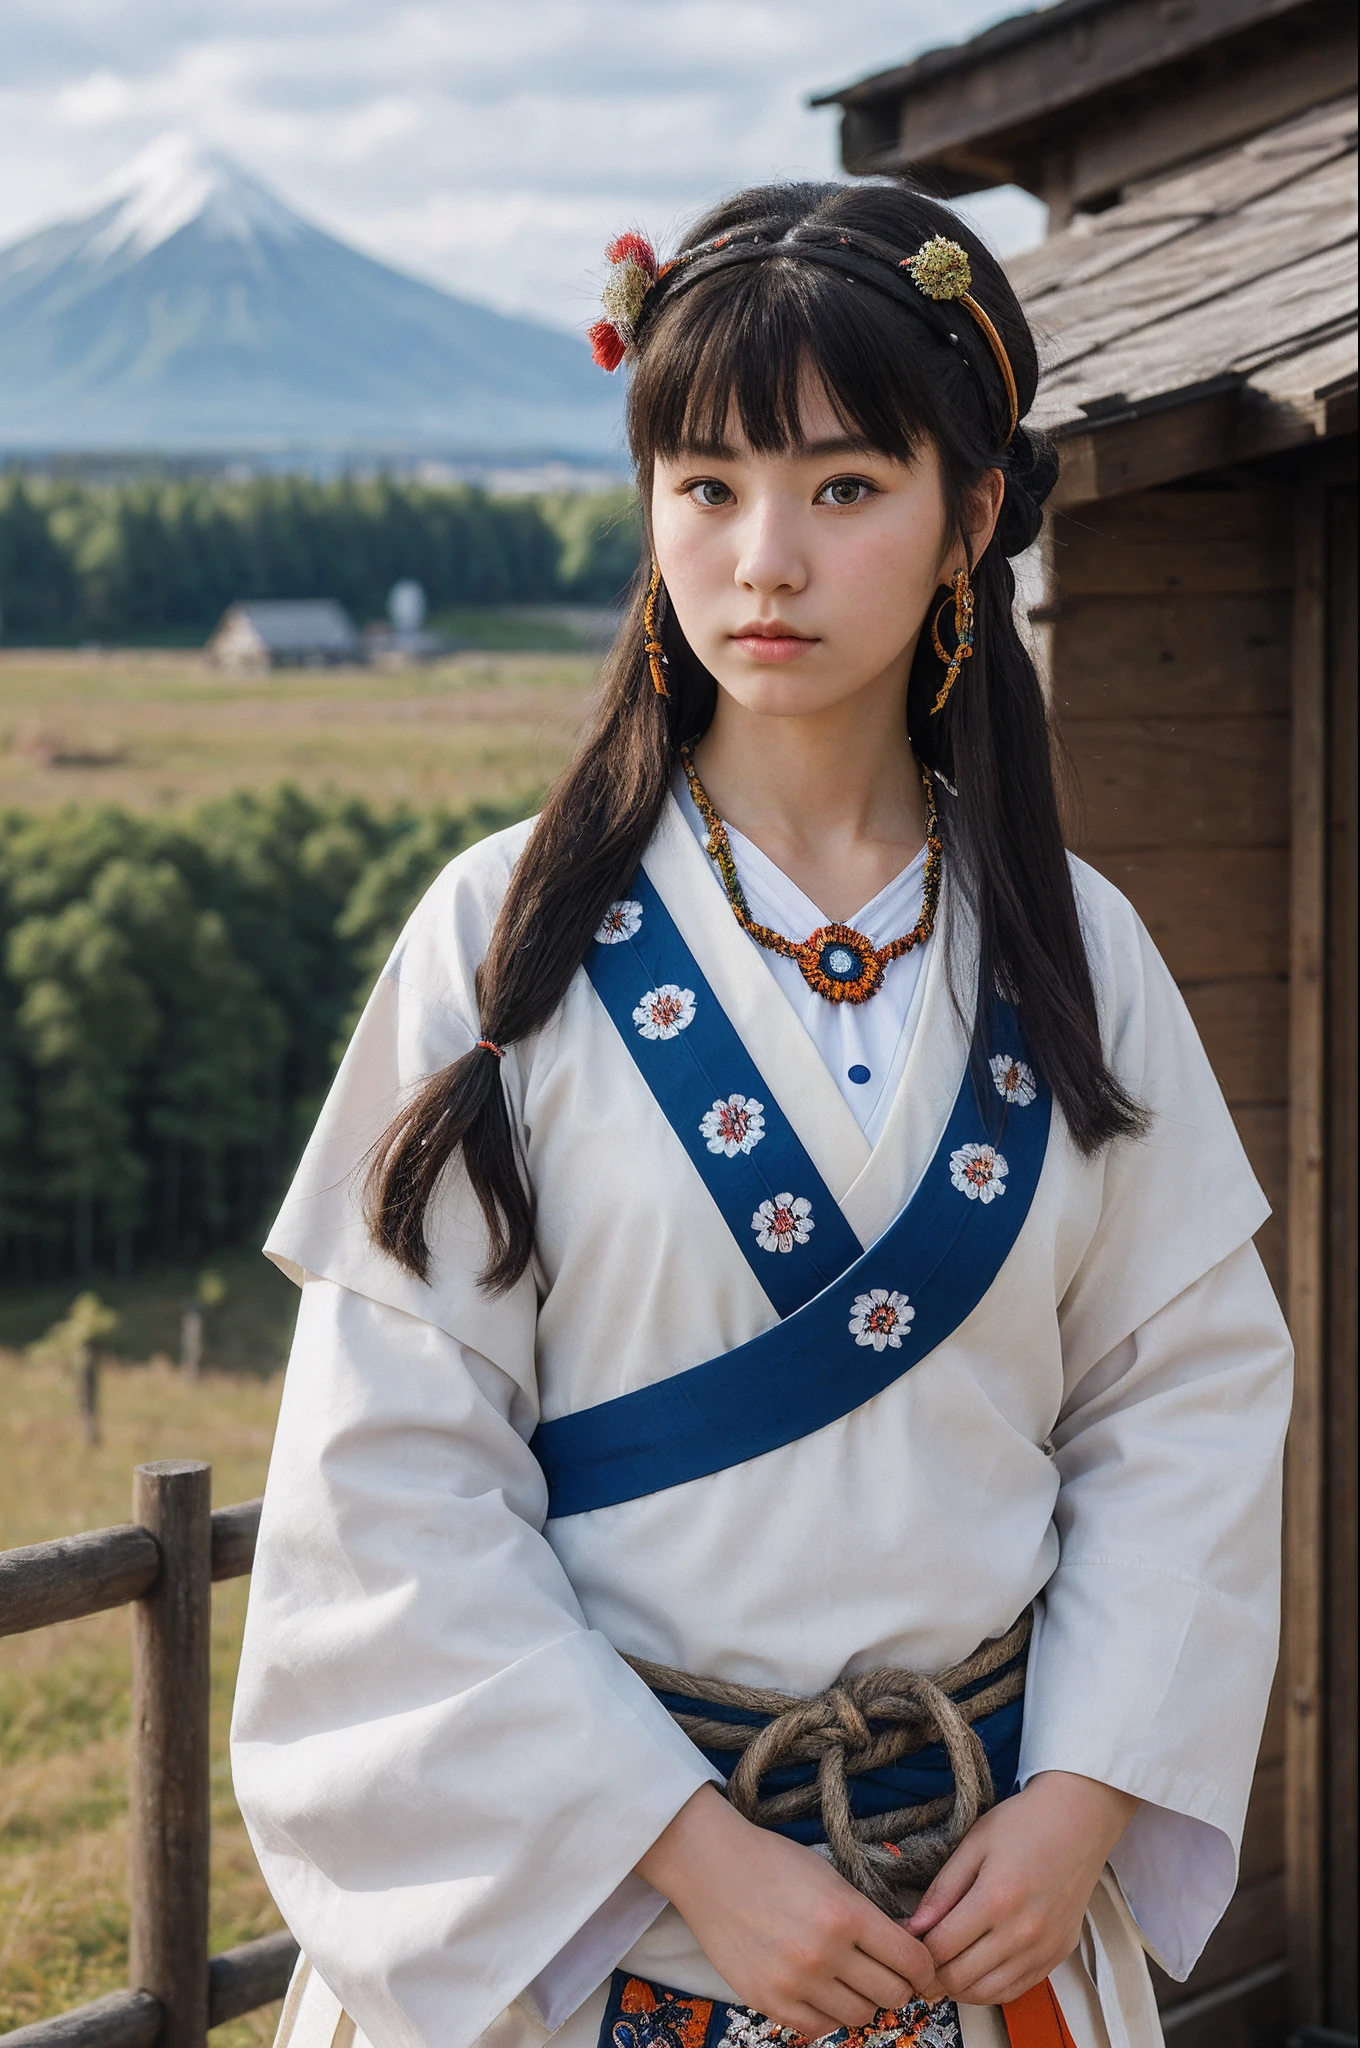 韓国の伝統衣装を着た女性が柵の前に立っている - SeaArt AI